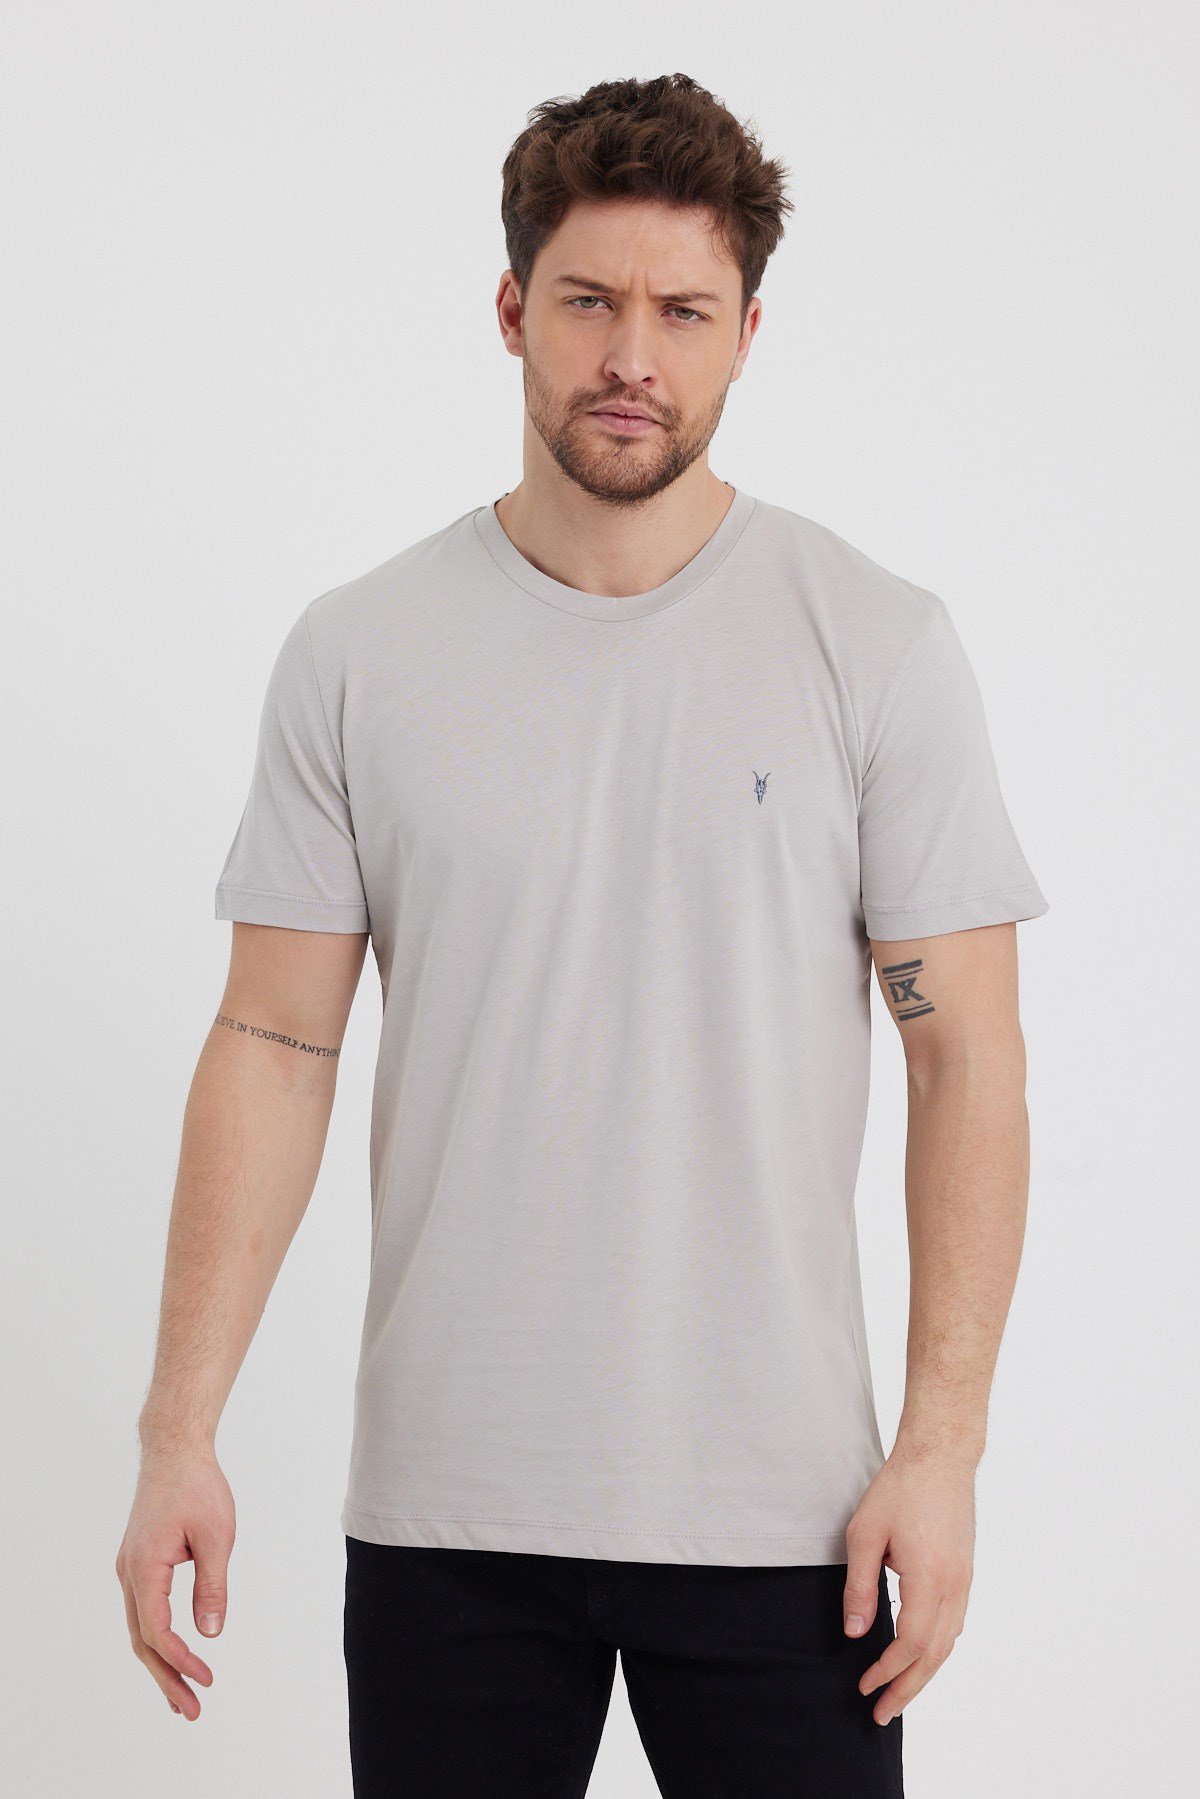 Erkek Gri T-Shirt Modelleri Fiyatları Erkek Basic T-Shirt